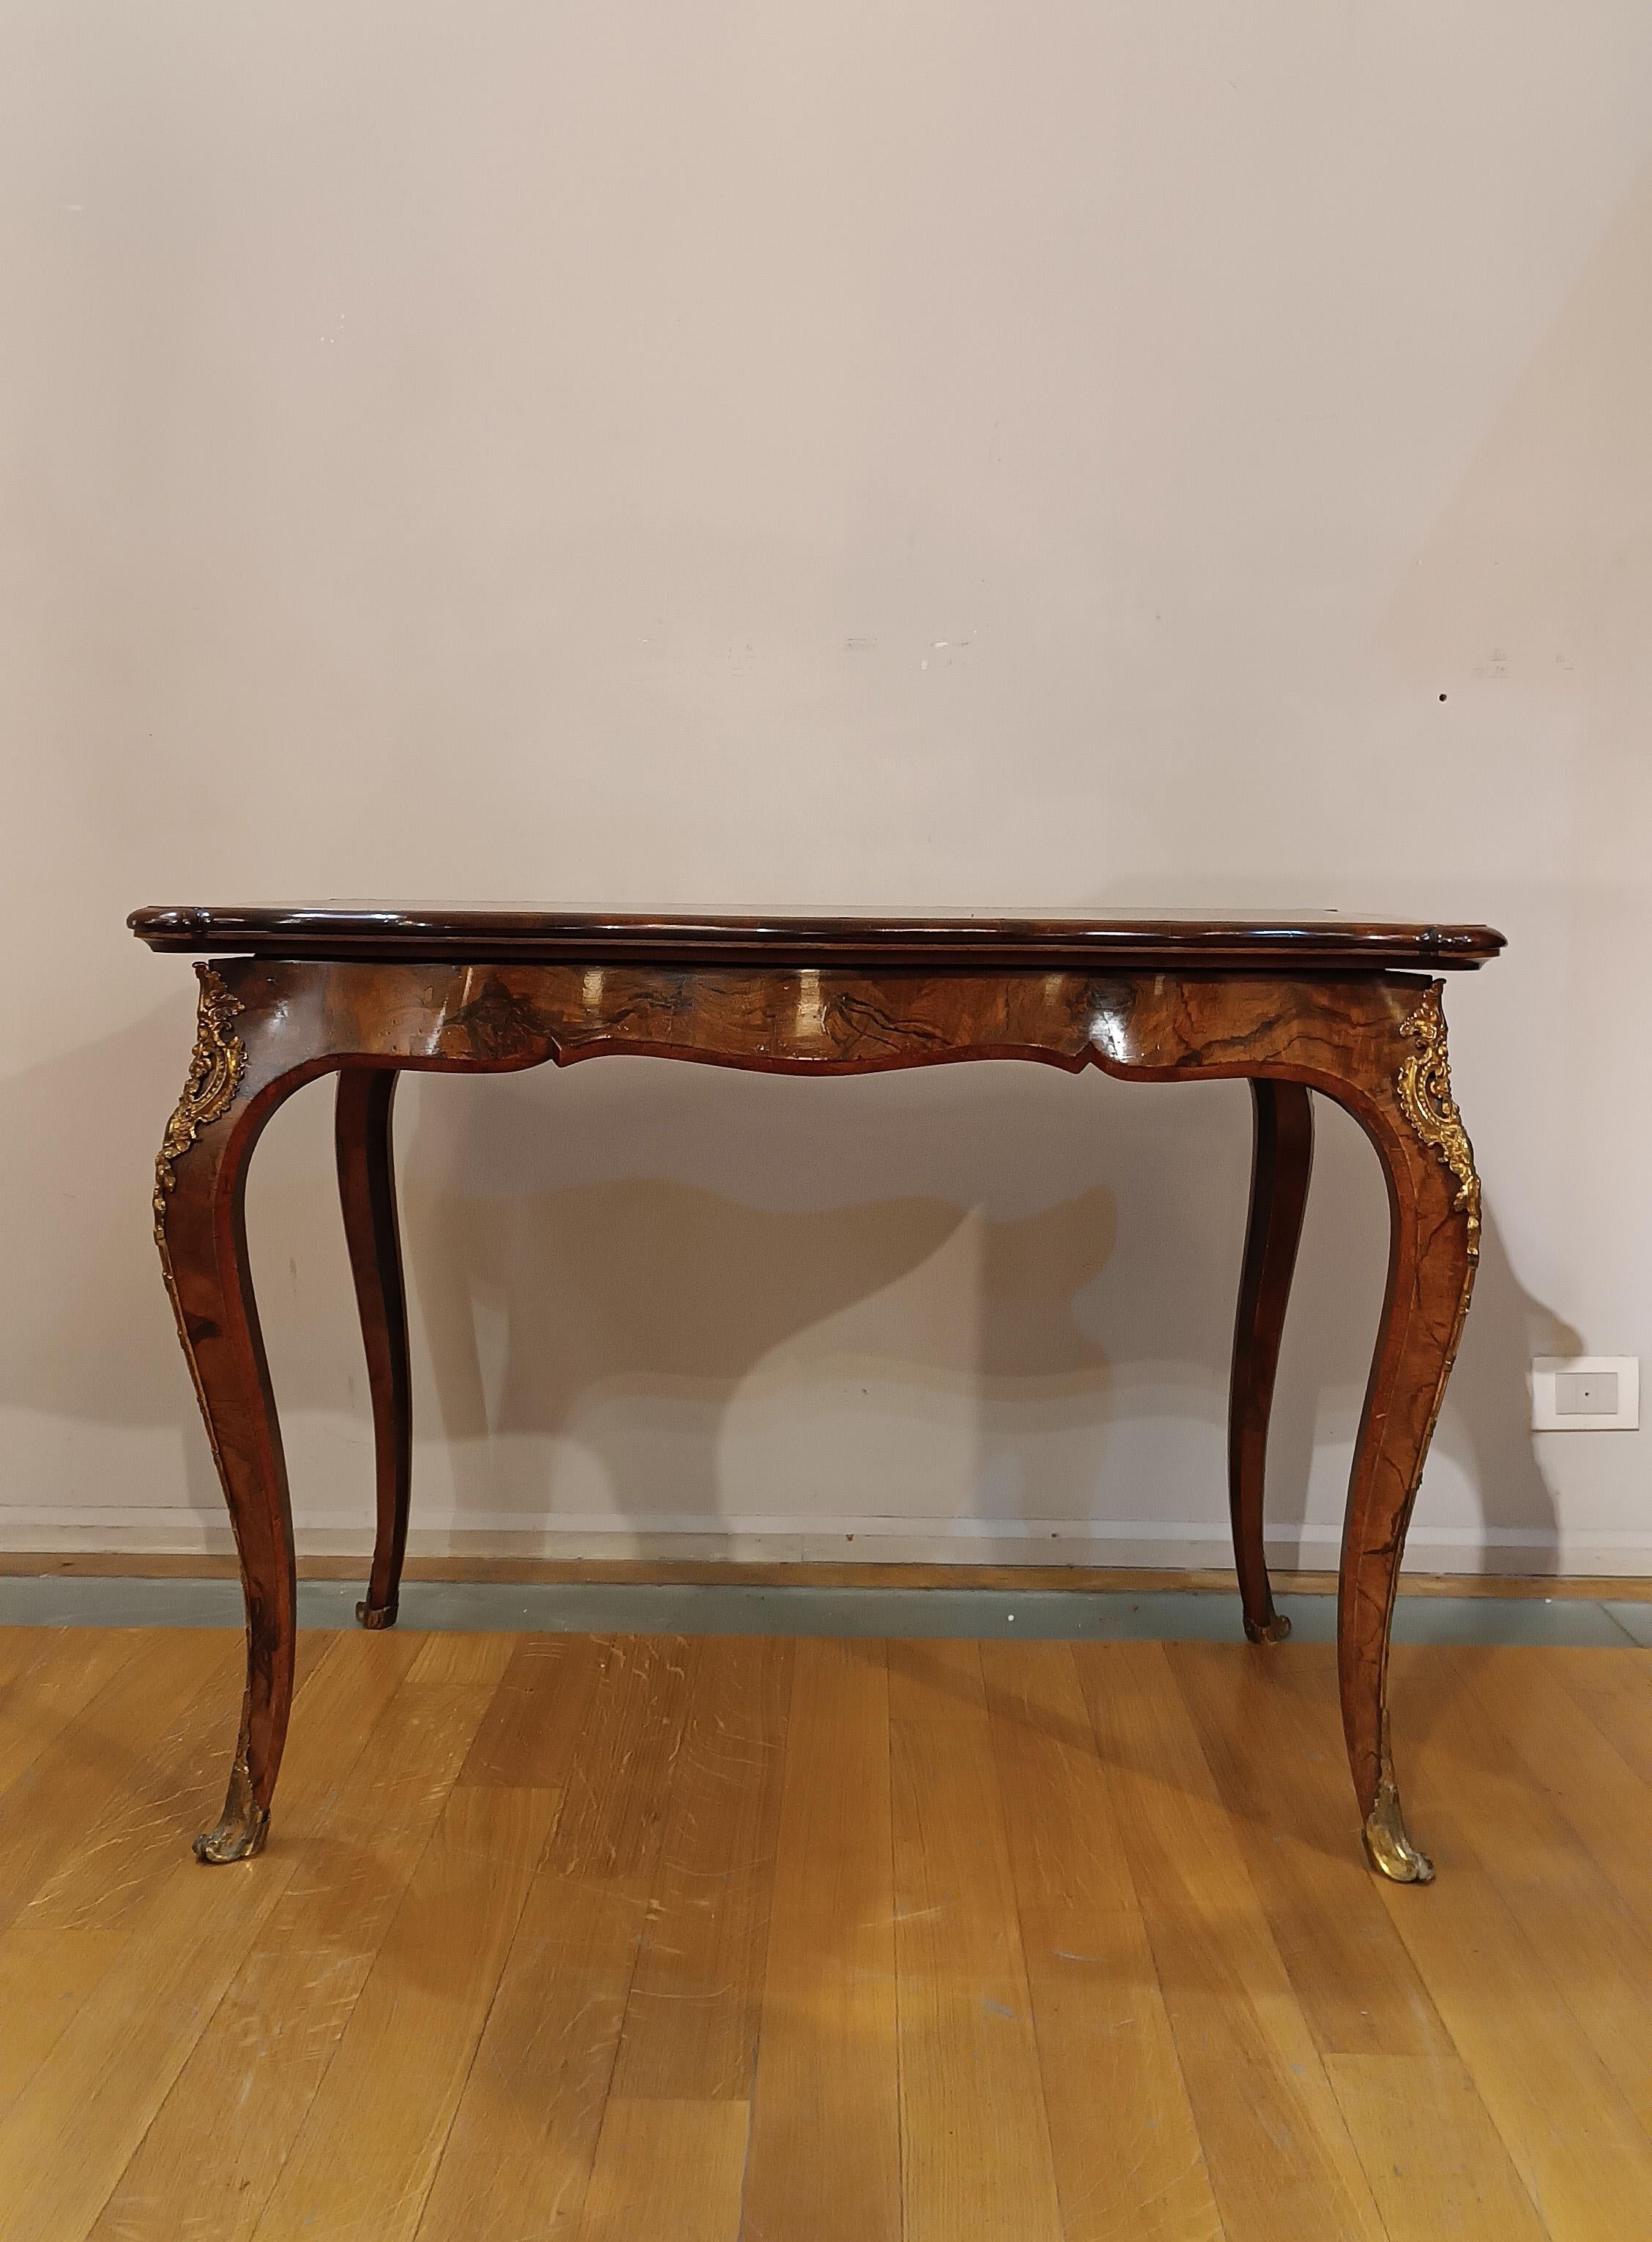 Eleganter französischer Kartentisch aus der ersten Hälfte des 19. Jahrhunderts (ca. 1820-1840), gekennzeichnet durch die für den Louis-Philippe-Stil typischen gewellten Beine. Dieser aus edlem Nussbaum gefertigte Mitteltisch lässt sich leicht in